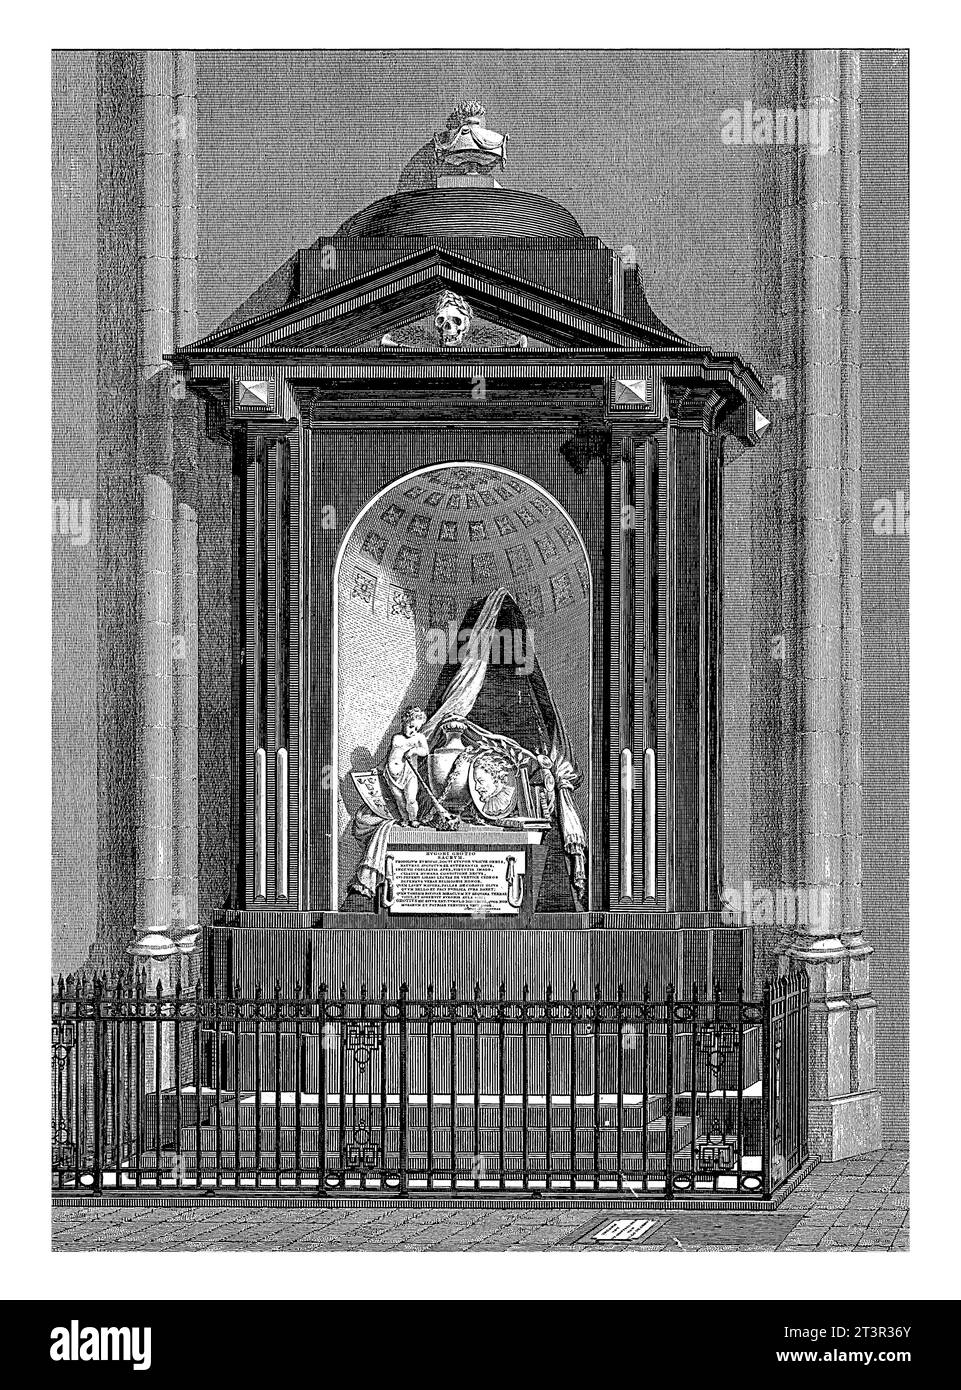 Tombe d'Hugo de Groot, mort en 1645, Johan van der Spruyt, d'après Hermanus van Zwol, 1783 - 1800 Monument à Hugo Grotius dans la Nieuwe Kerk de Delft. Banque D'Images